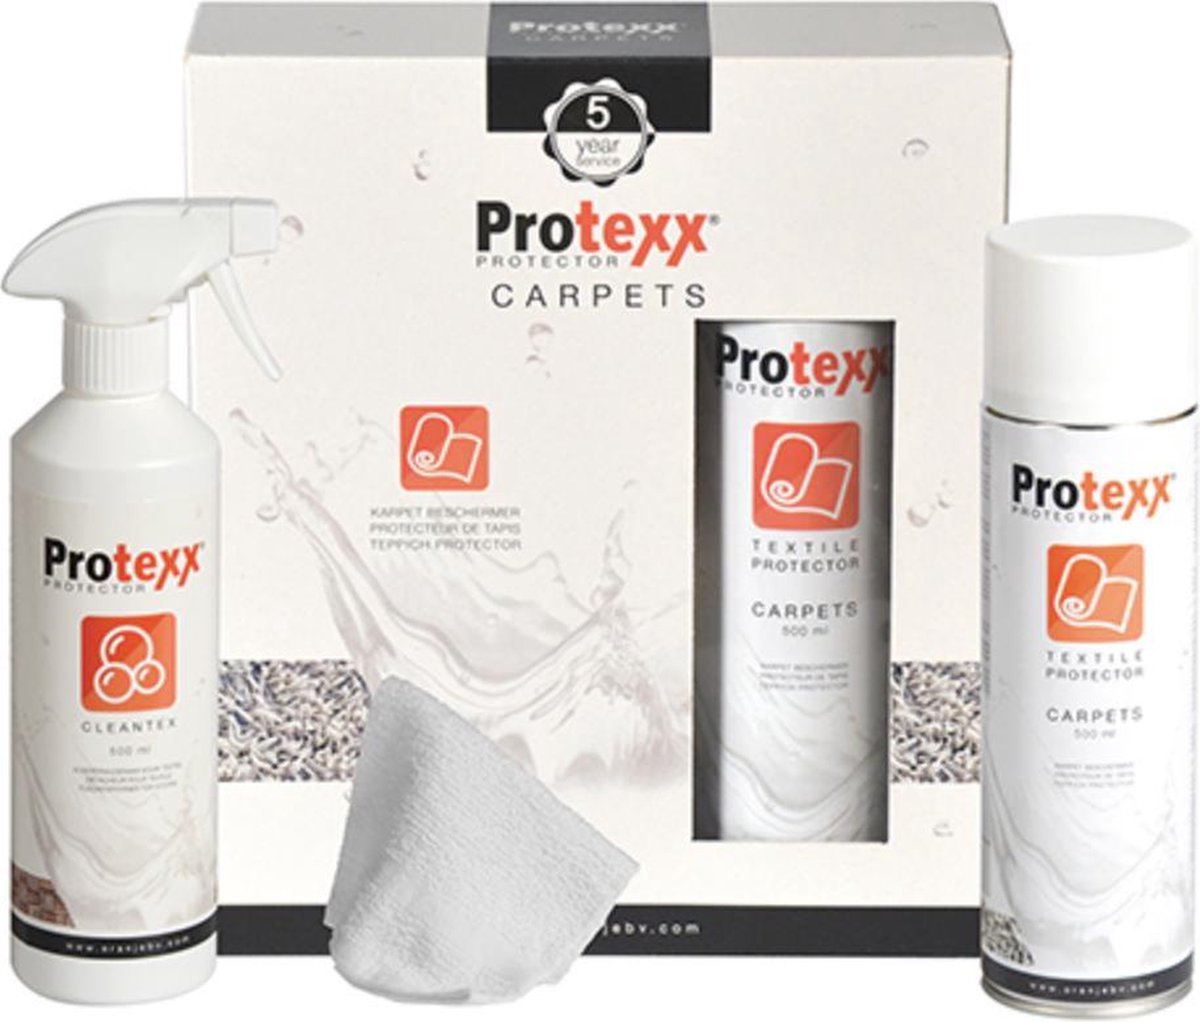 Protexx Karpet Beschermer 5 jaar |